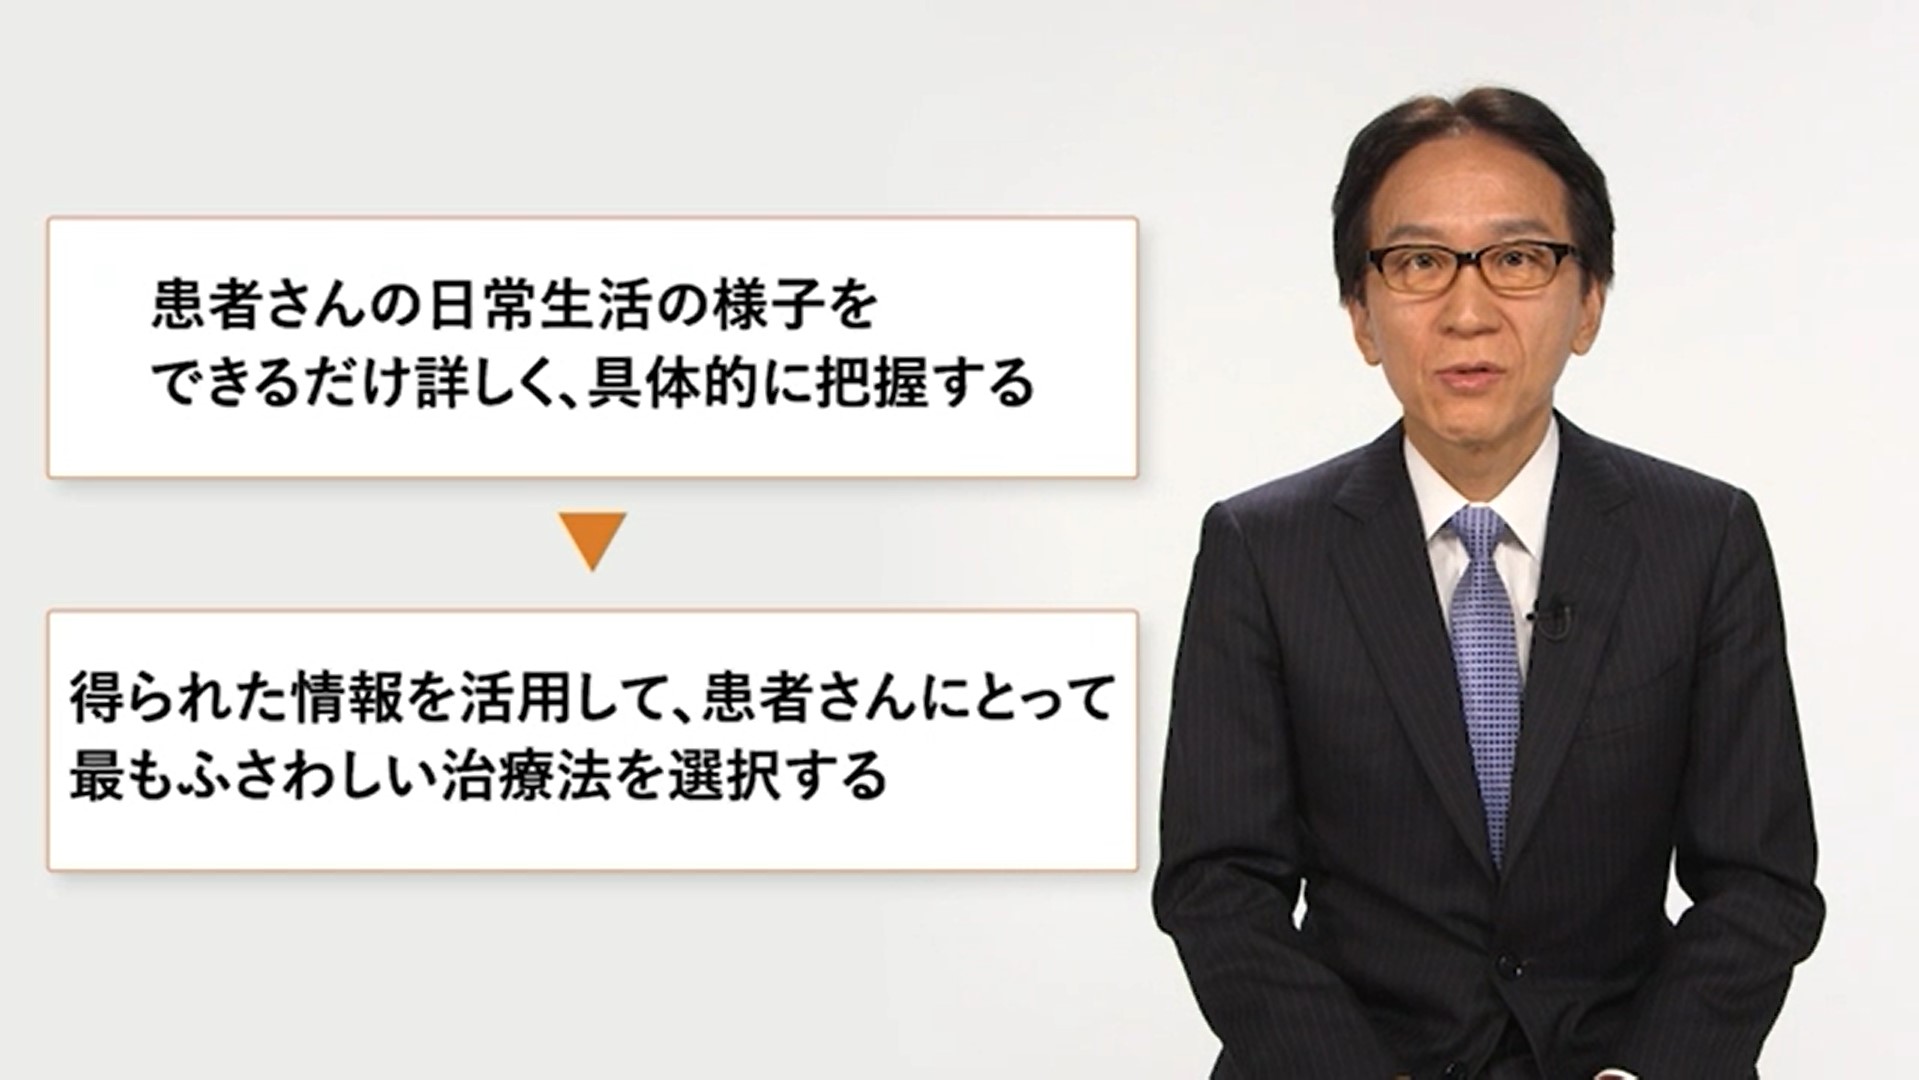 小児てんかん診療における日常生活の様子を把握することの重要性　高橋孝雄先生